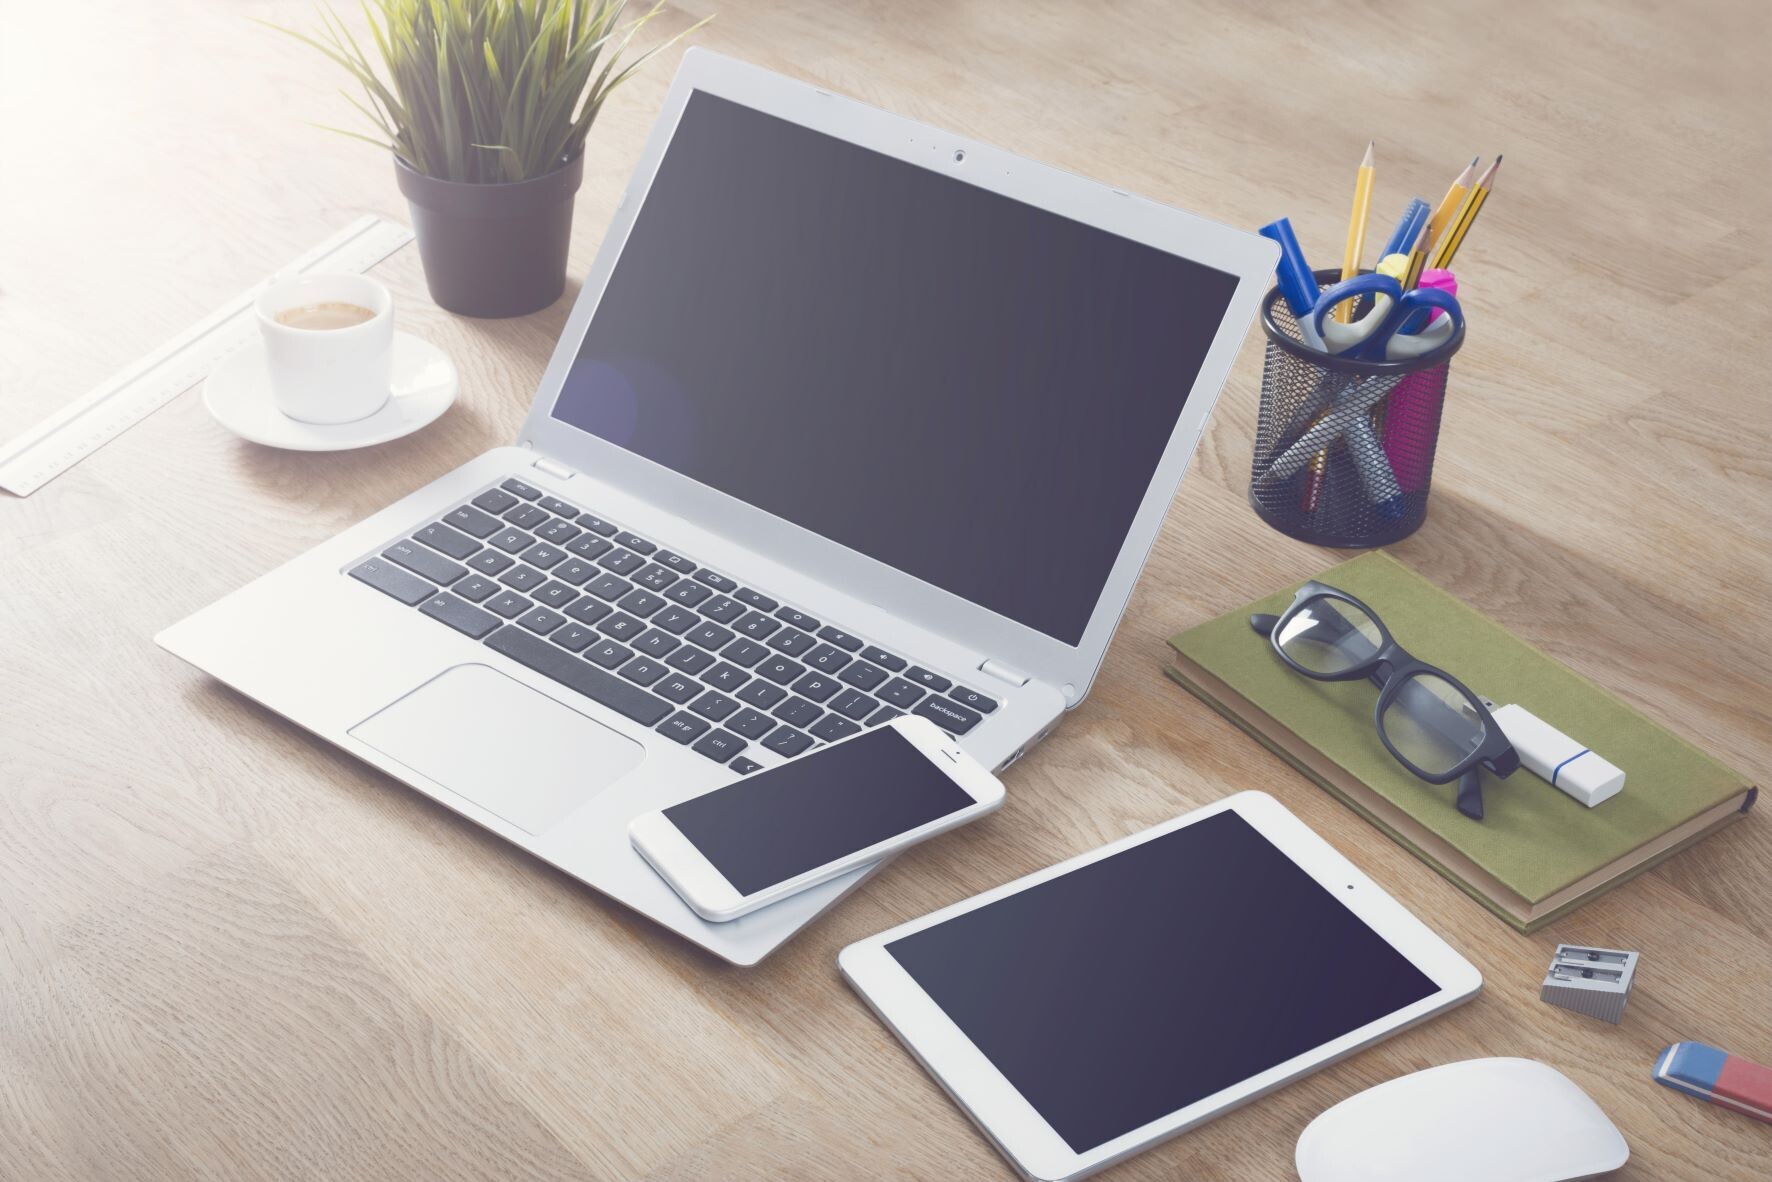 Desk setup with laptop, tablet, smartphone for responsive website design